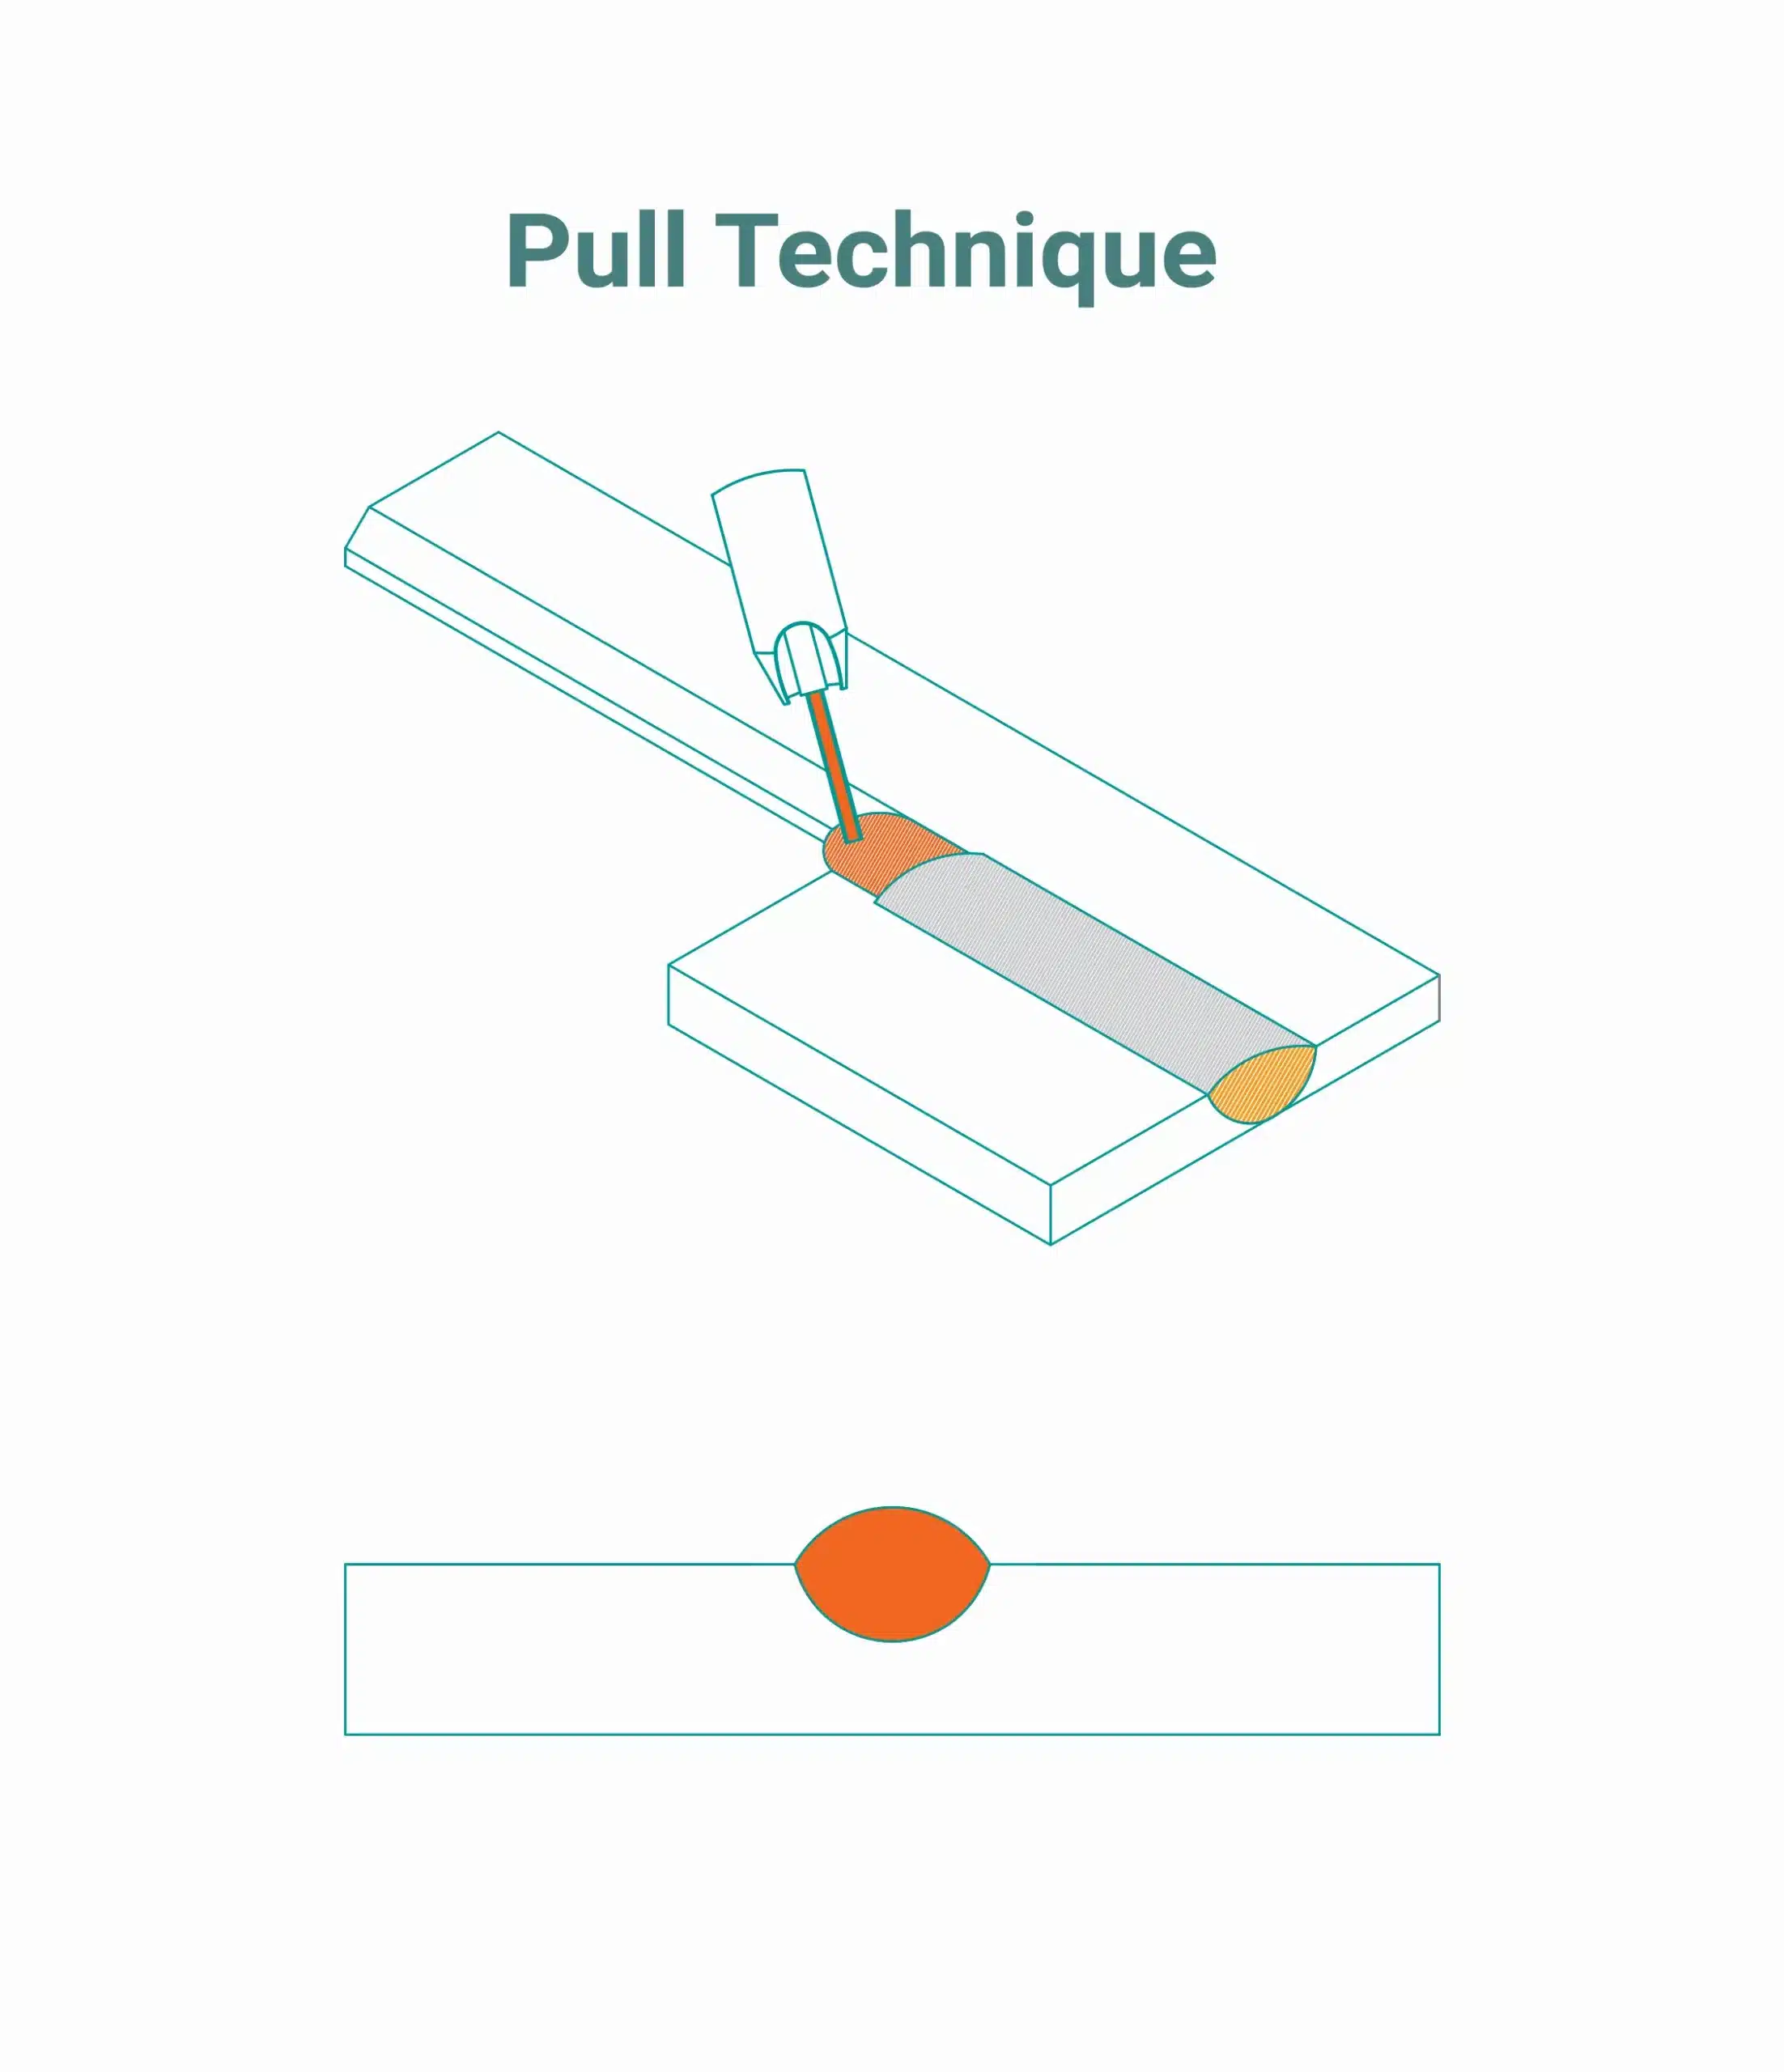 Pull MIG welding technique diagram